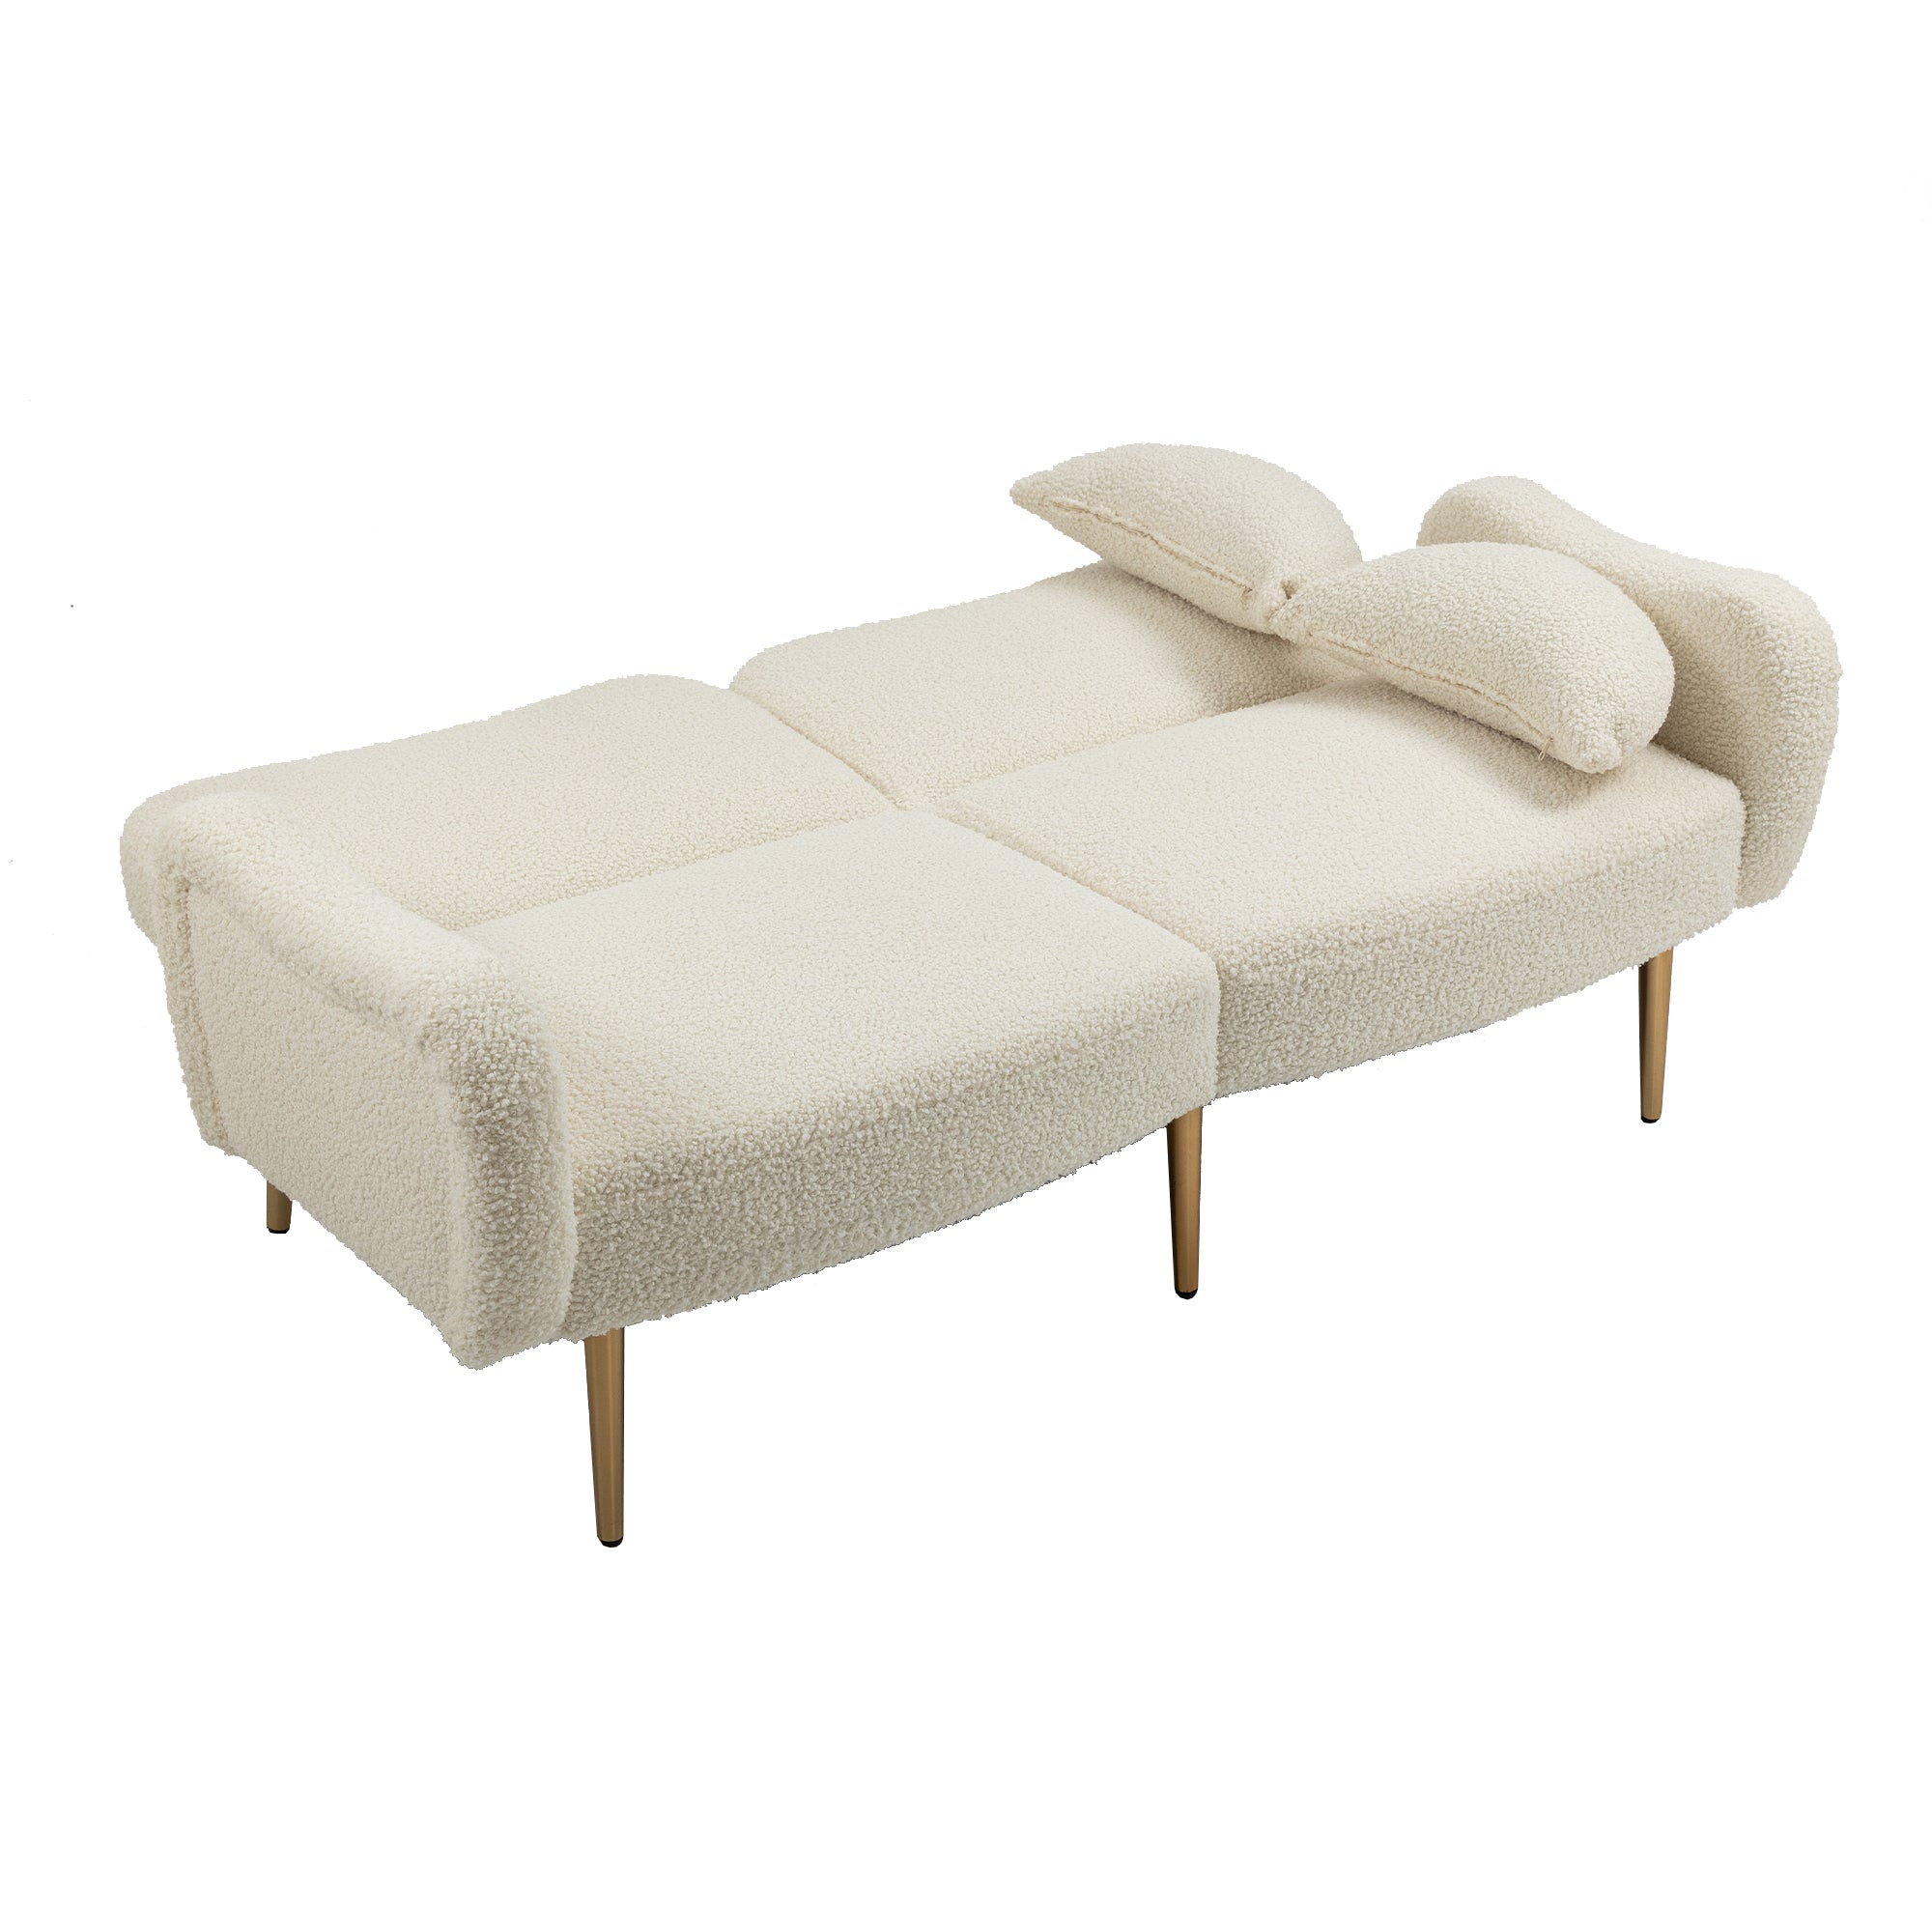 Mid Century Modern Velvet Love Seats Sofa with 2 Bolster Pillows, Loveseat Armrest - White Teddy